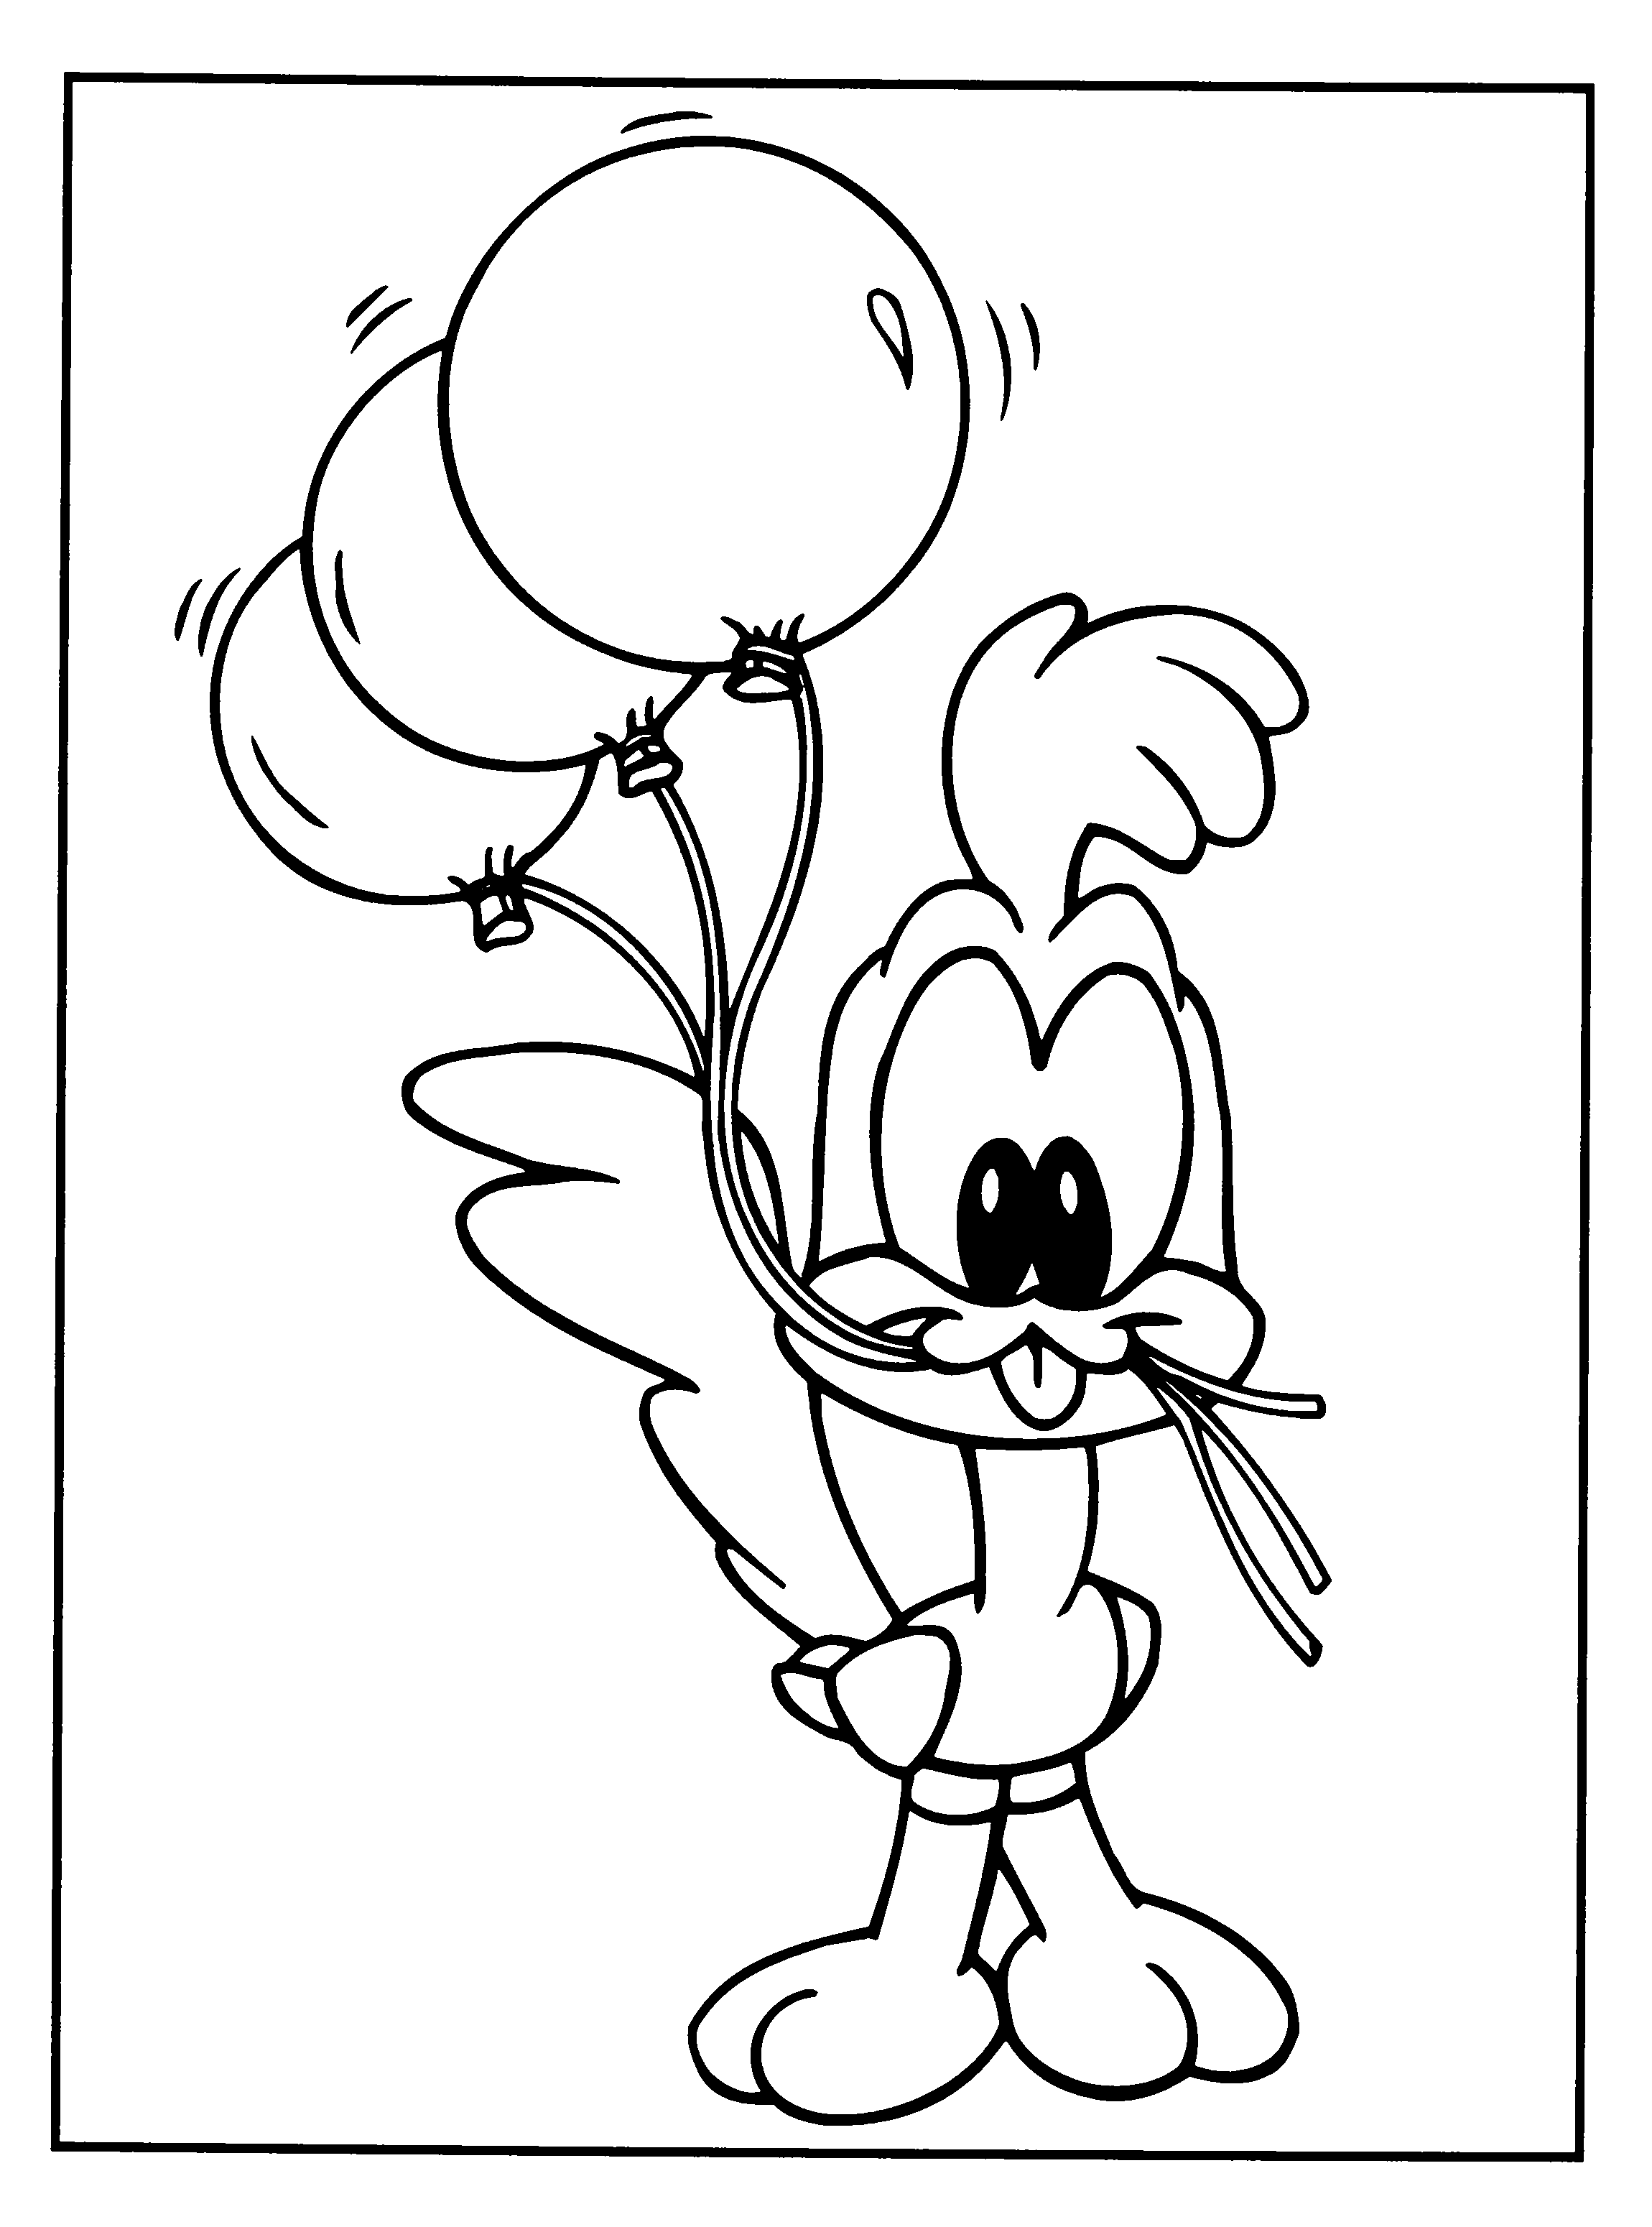 Bebe looney tunes Dibujos para Colorear - DisneyDibujos.com